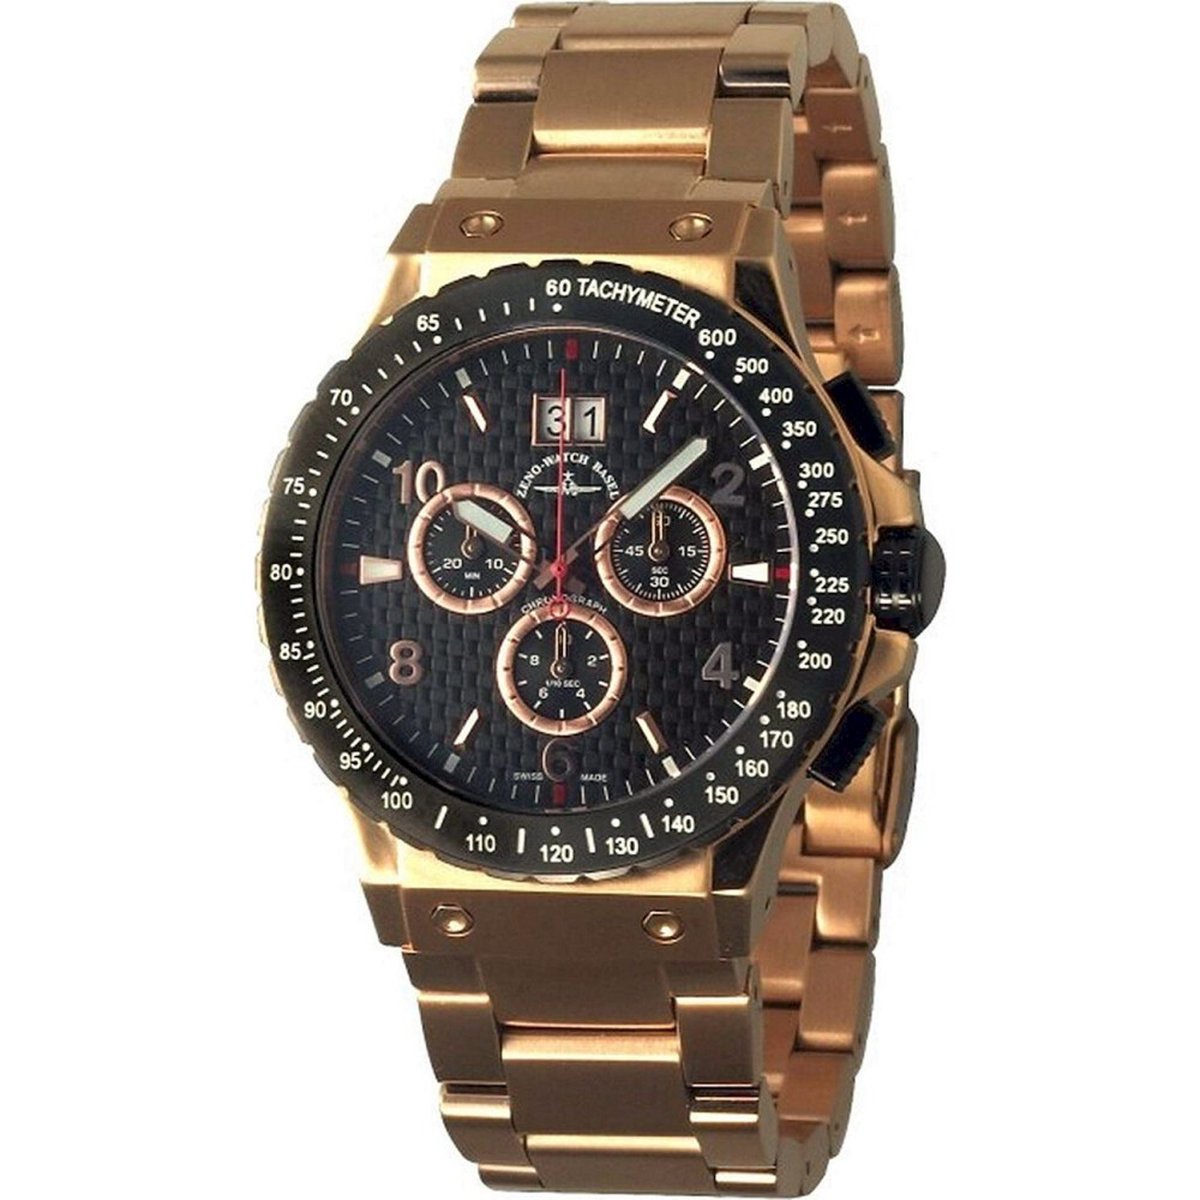 Zeno Watch Basel Herenhorloge 91055-5040Q-Pgr-s1-6M